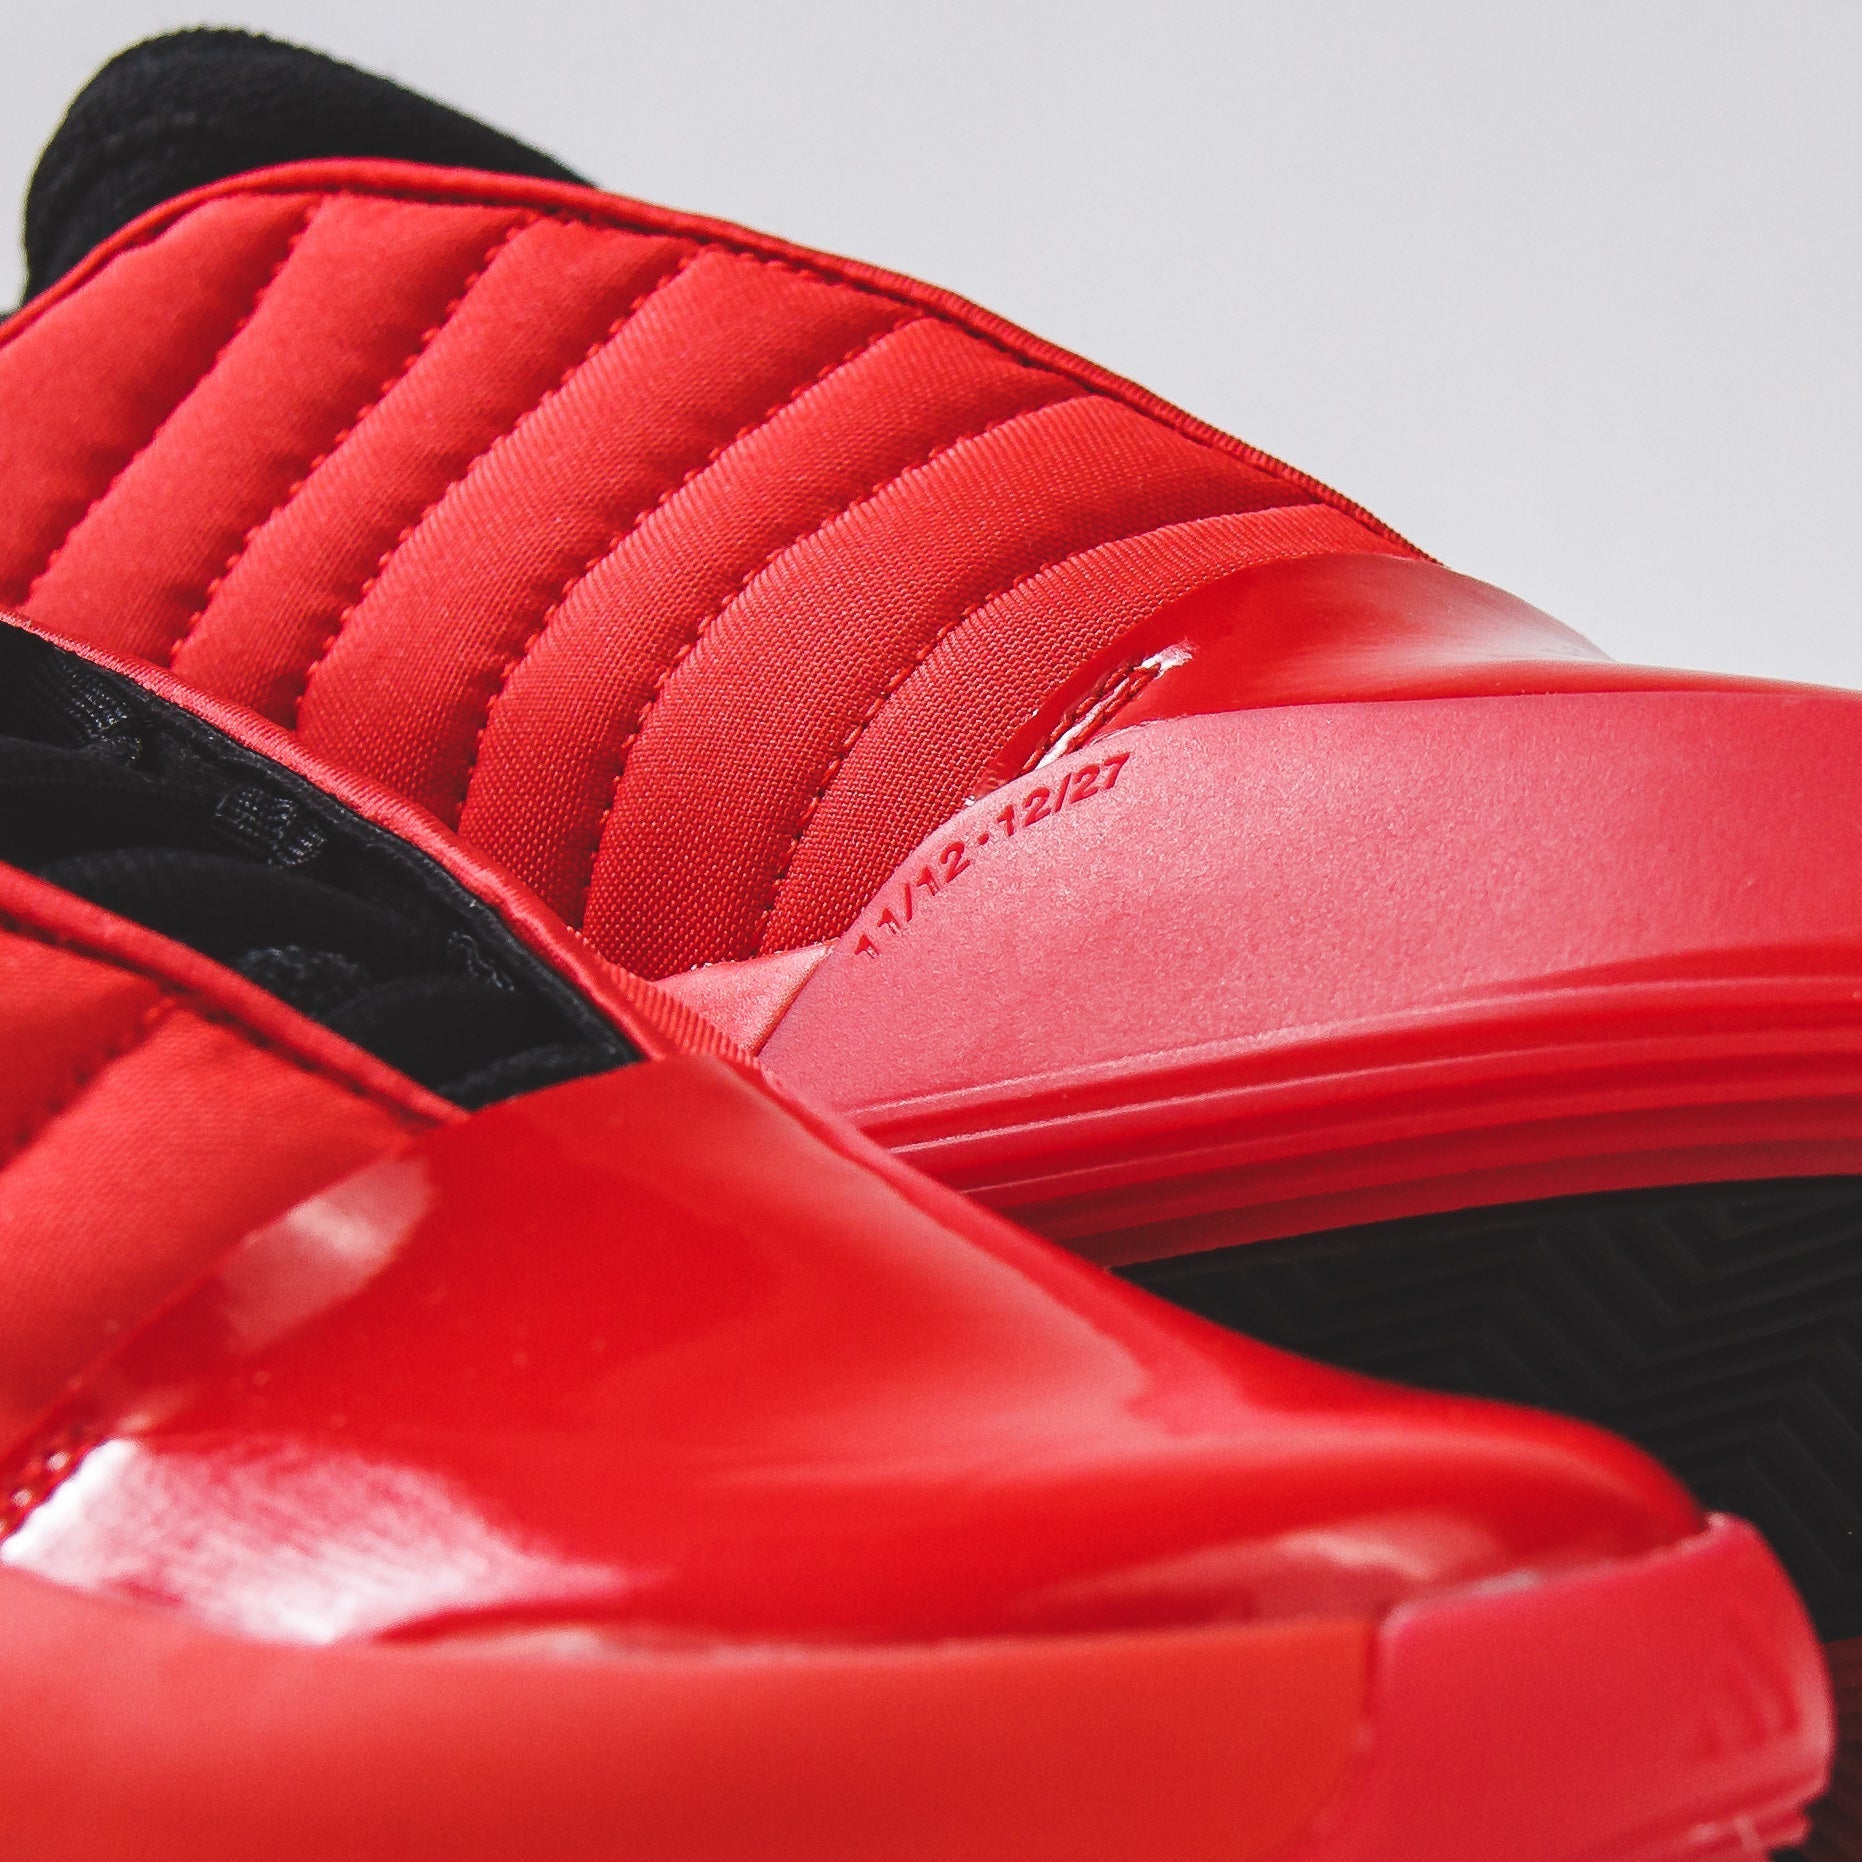 Adidas Basketball Men Harden Volume 7 Red Black GW4464 - FOOTWEAR - Canada